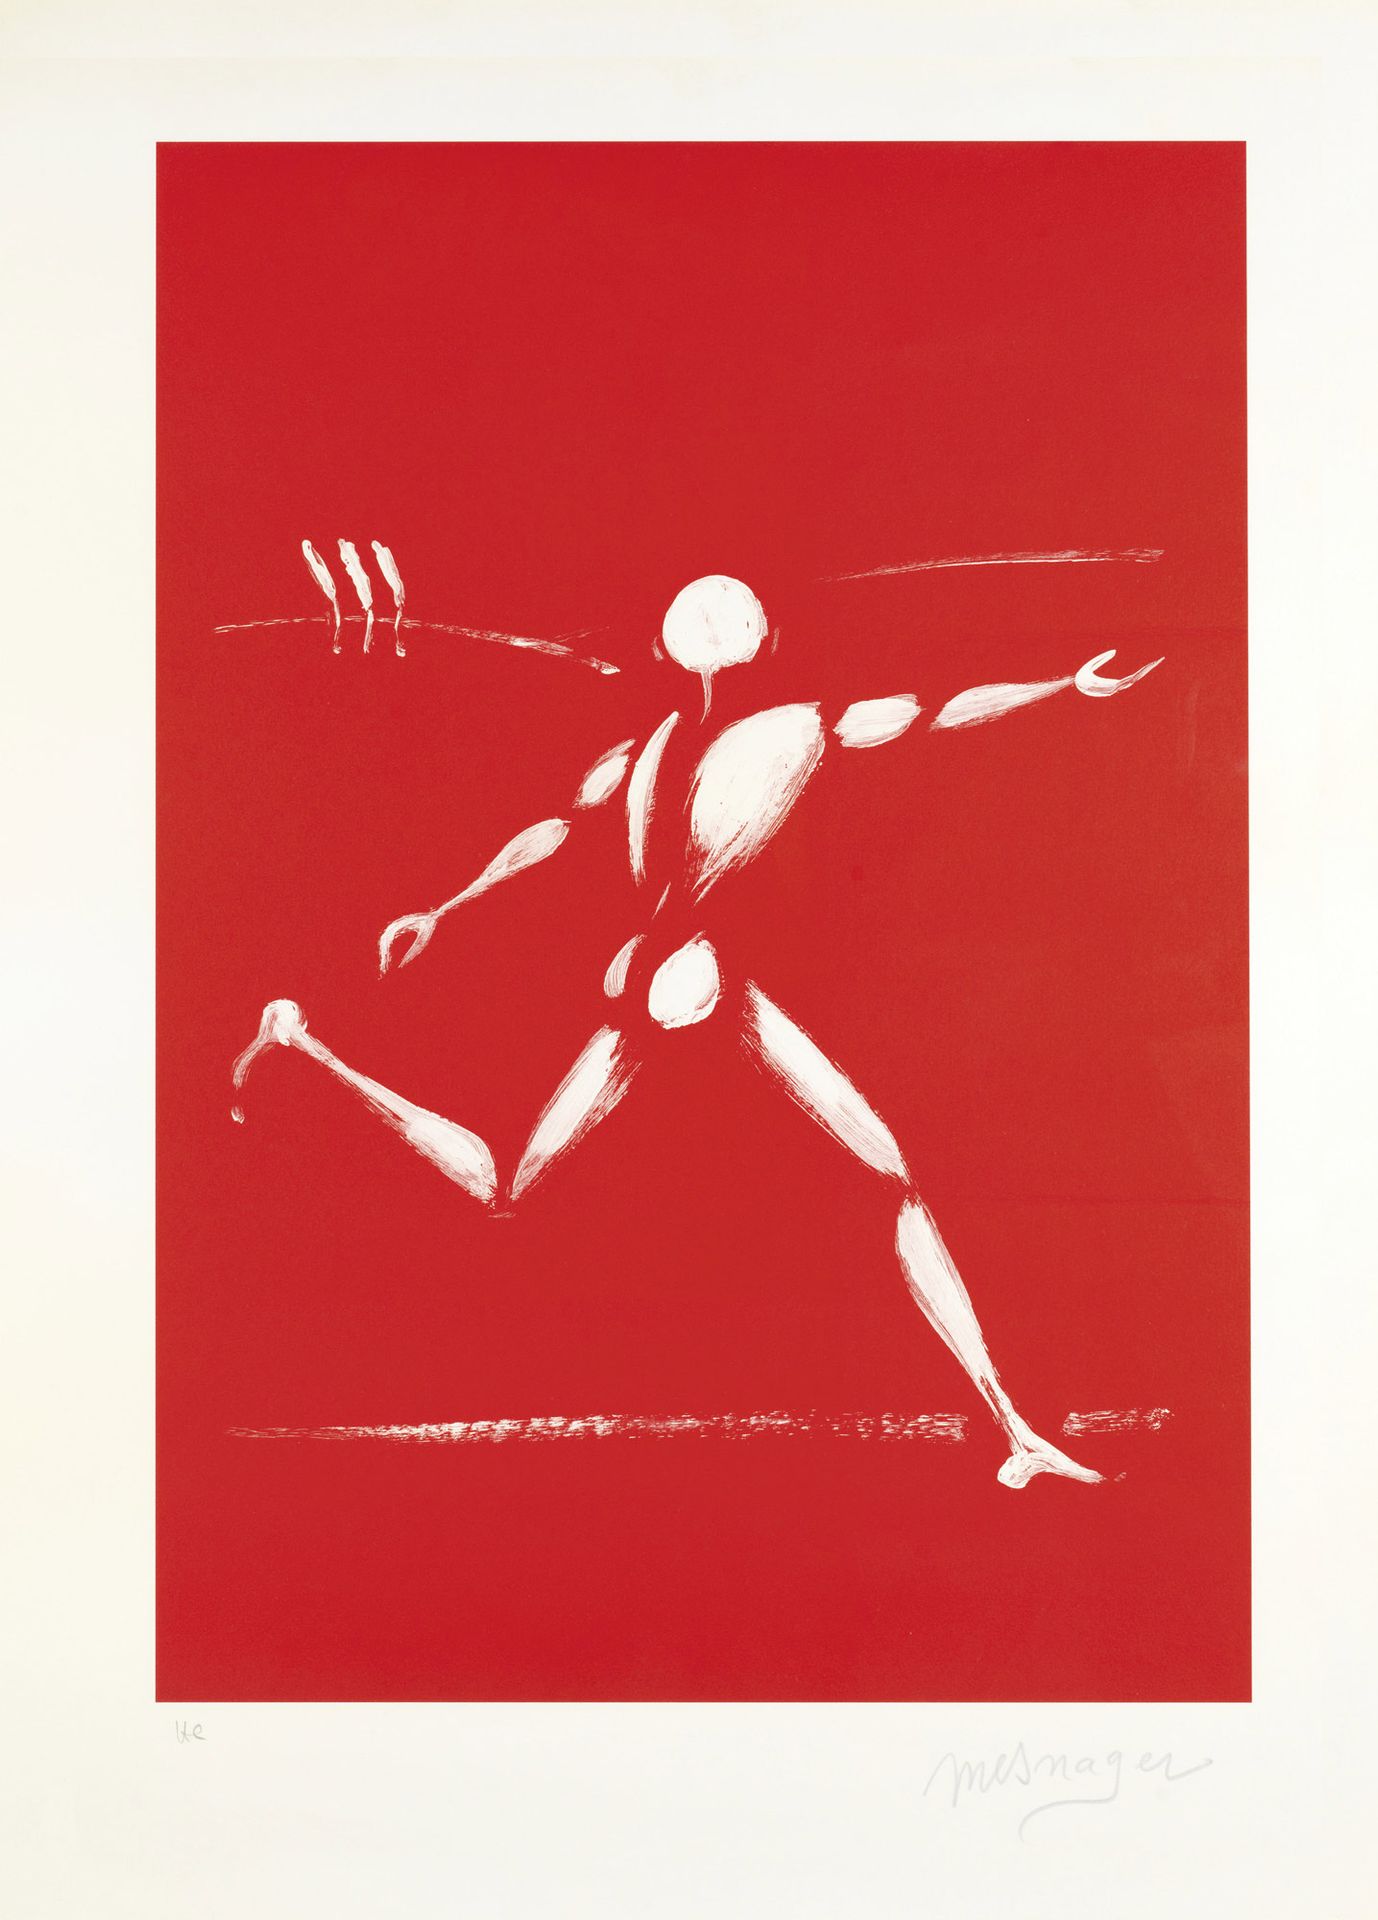 Jérôme MESNAGER (Né en 1961) 无标题彩色石板画
已签名并注明 "HC "的非印刷品 75 × 55 cm - 已装框